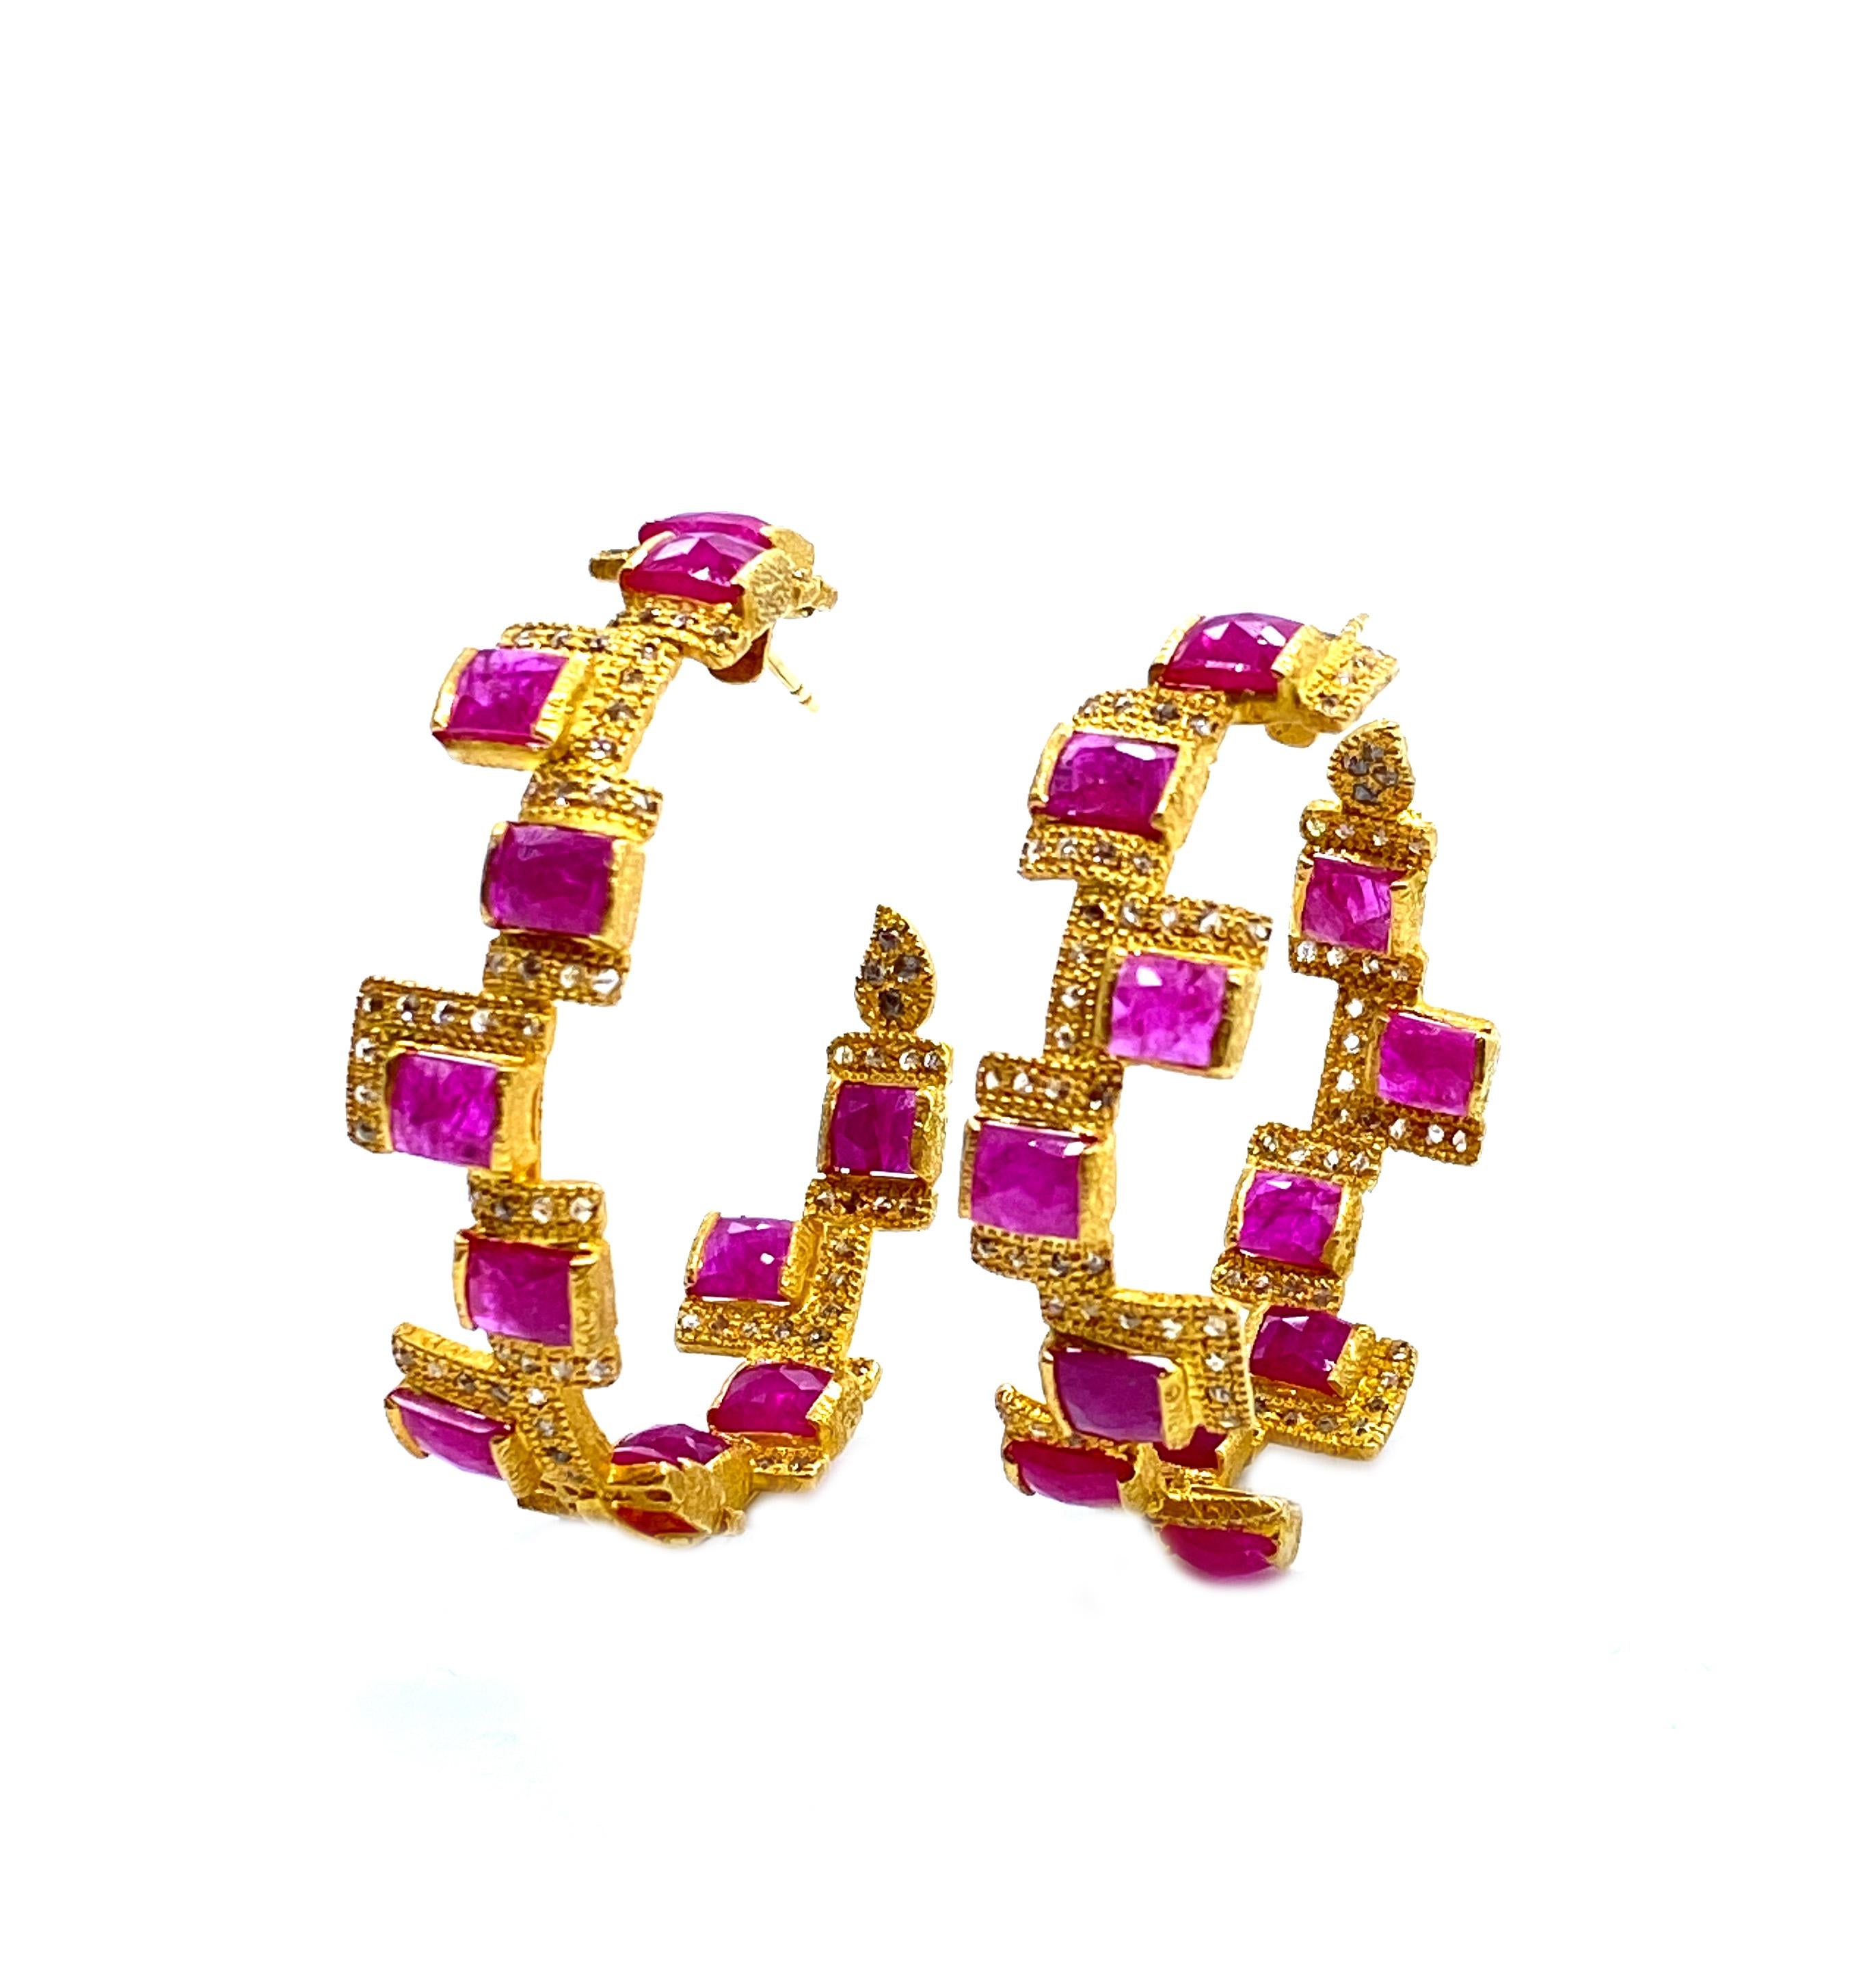 Ein atemberaubendes Paar Hoop-Ohrringe in einem reichen 20 Karat Gelbgold mit einem ungefähren Gewicht von 15,3cts Rubinen und 1,84cts Diamanten im Rosenschliff, die die Rubine umgeben. Inspiriert von Art Deco und Mosaik aus der Affinity-Kollektion